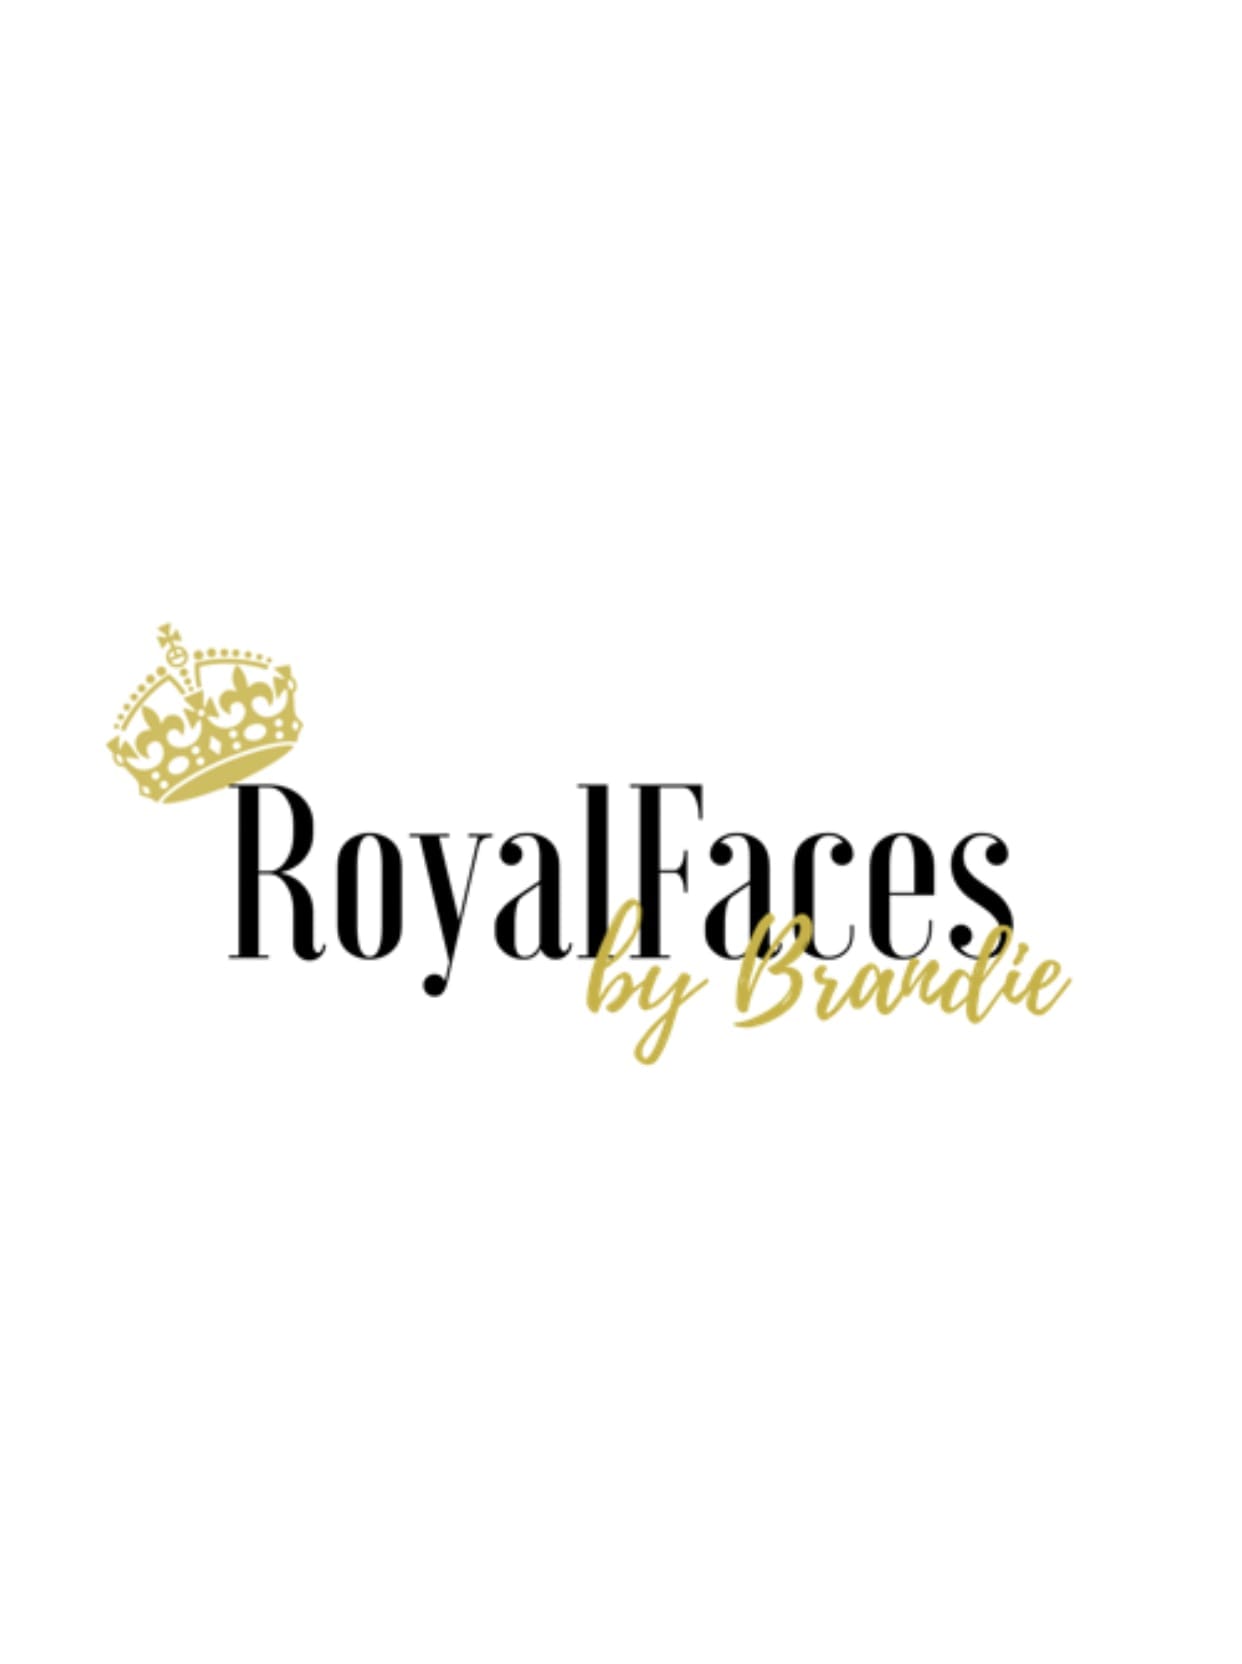 Royal Faces By Brandie